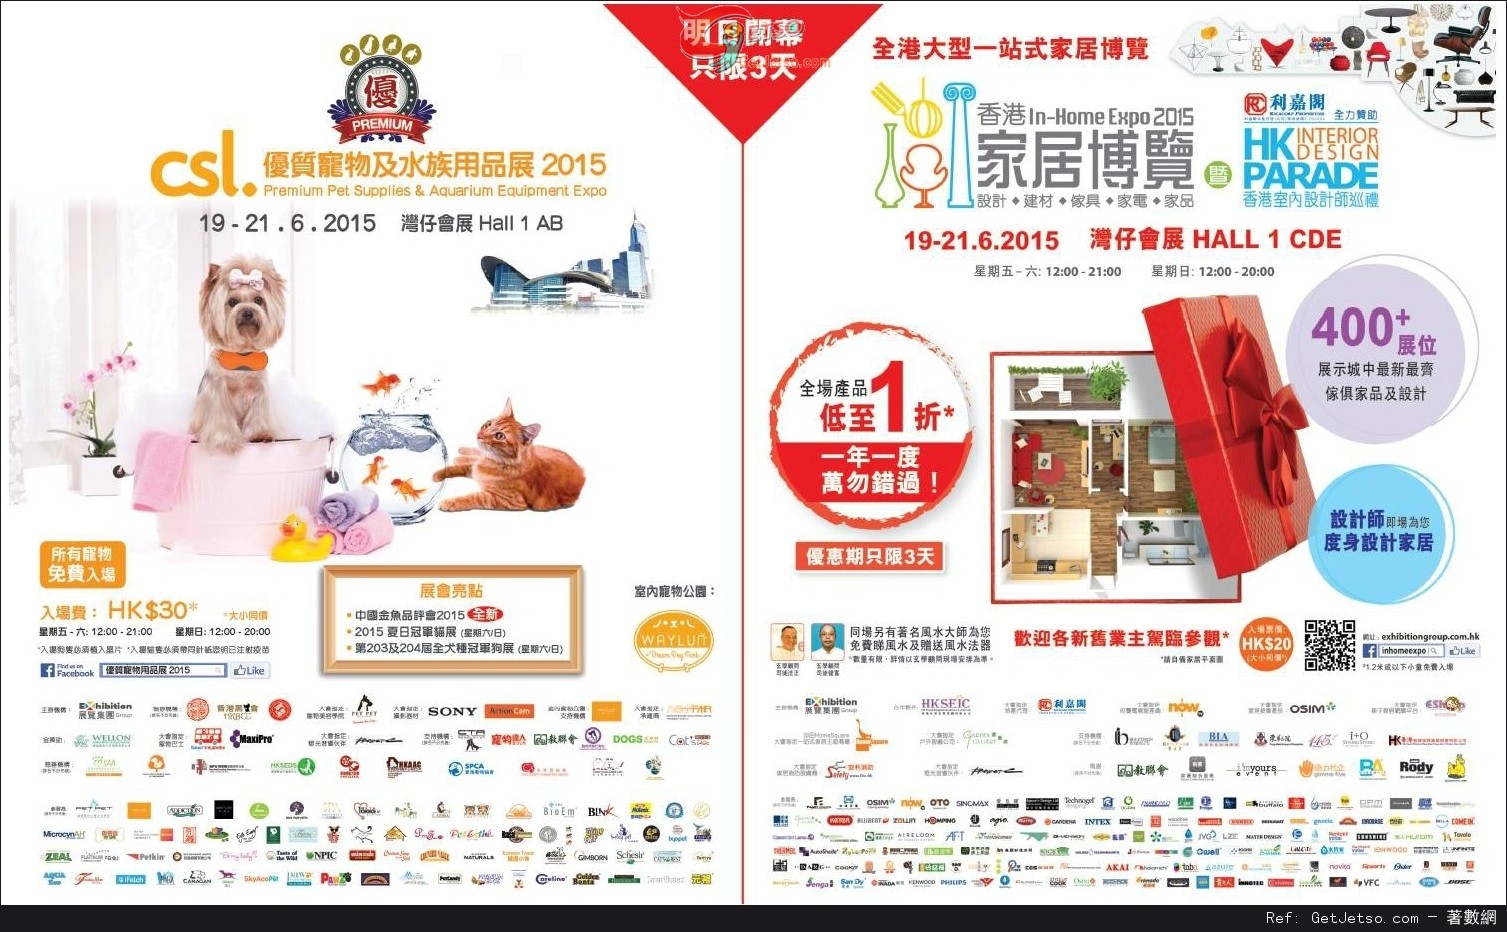 香港家居博覽2015全場產品低至1折優惠(15年6月19-21日)圖片1